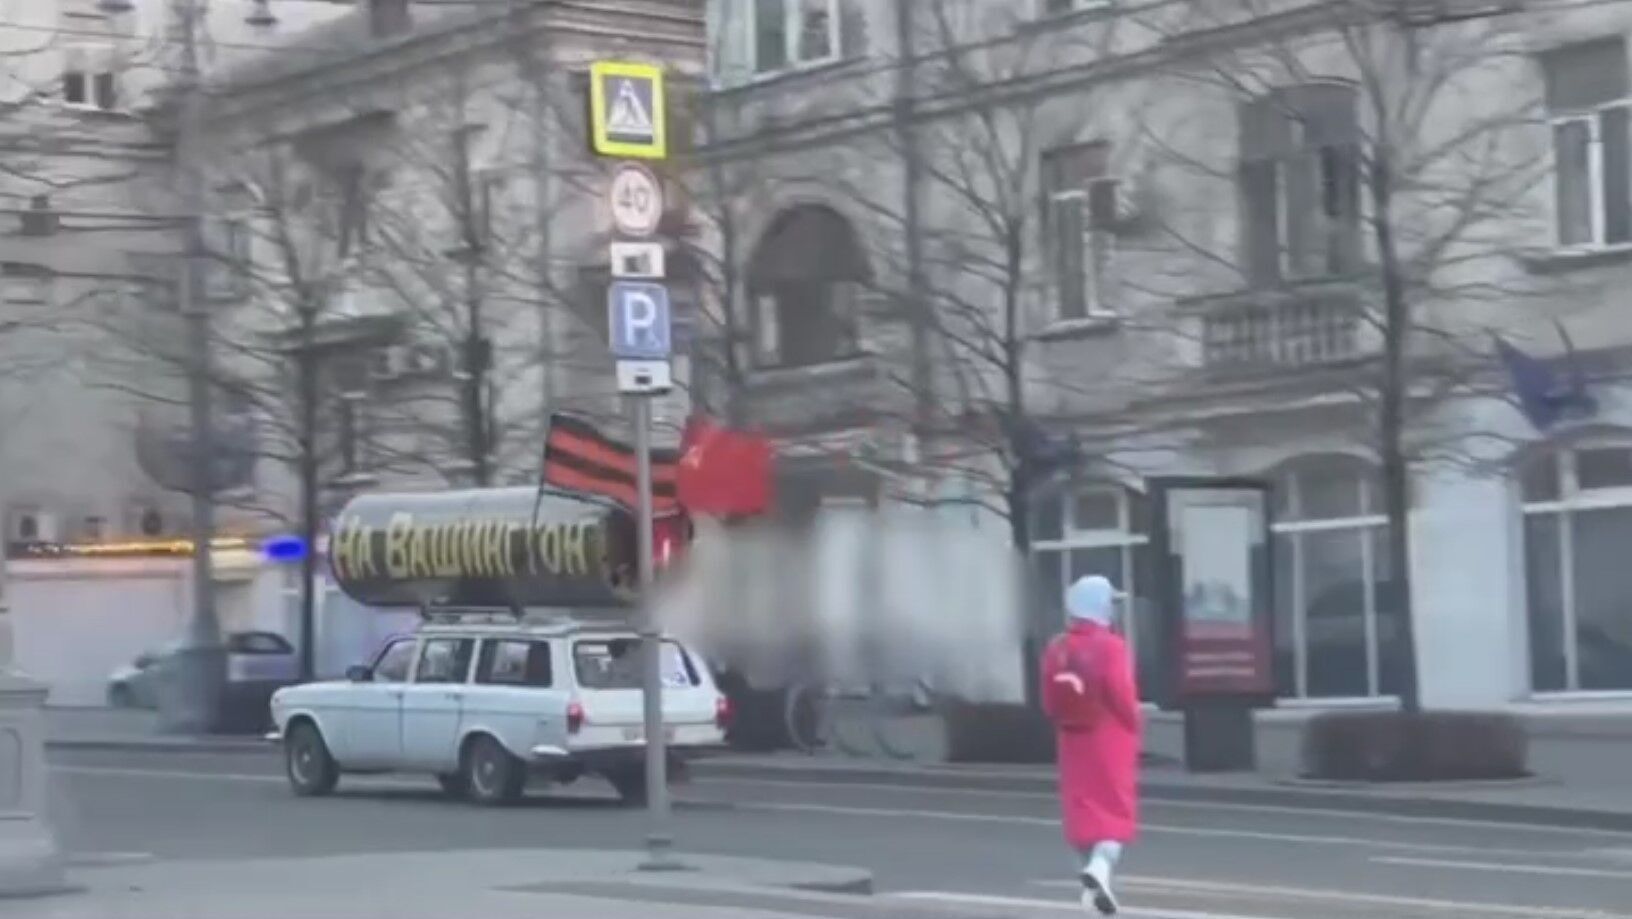 "На Вашингтон!" Оккупанты в Севастополе устроили абсурдную акцию, намекнув на агрессивные планы. Видео